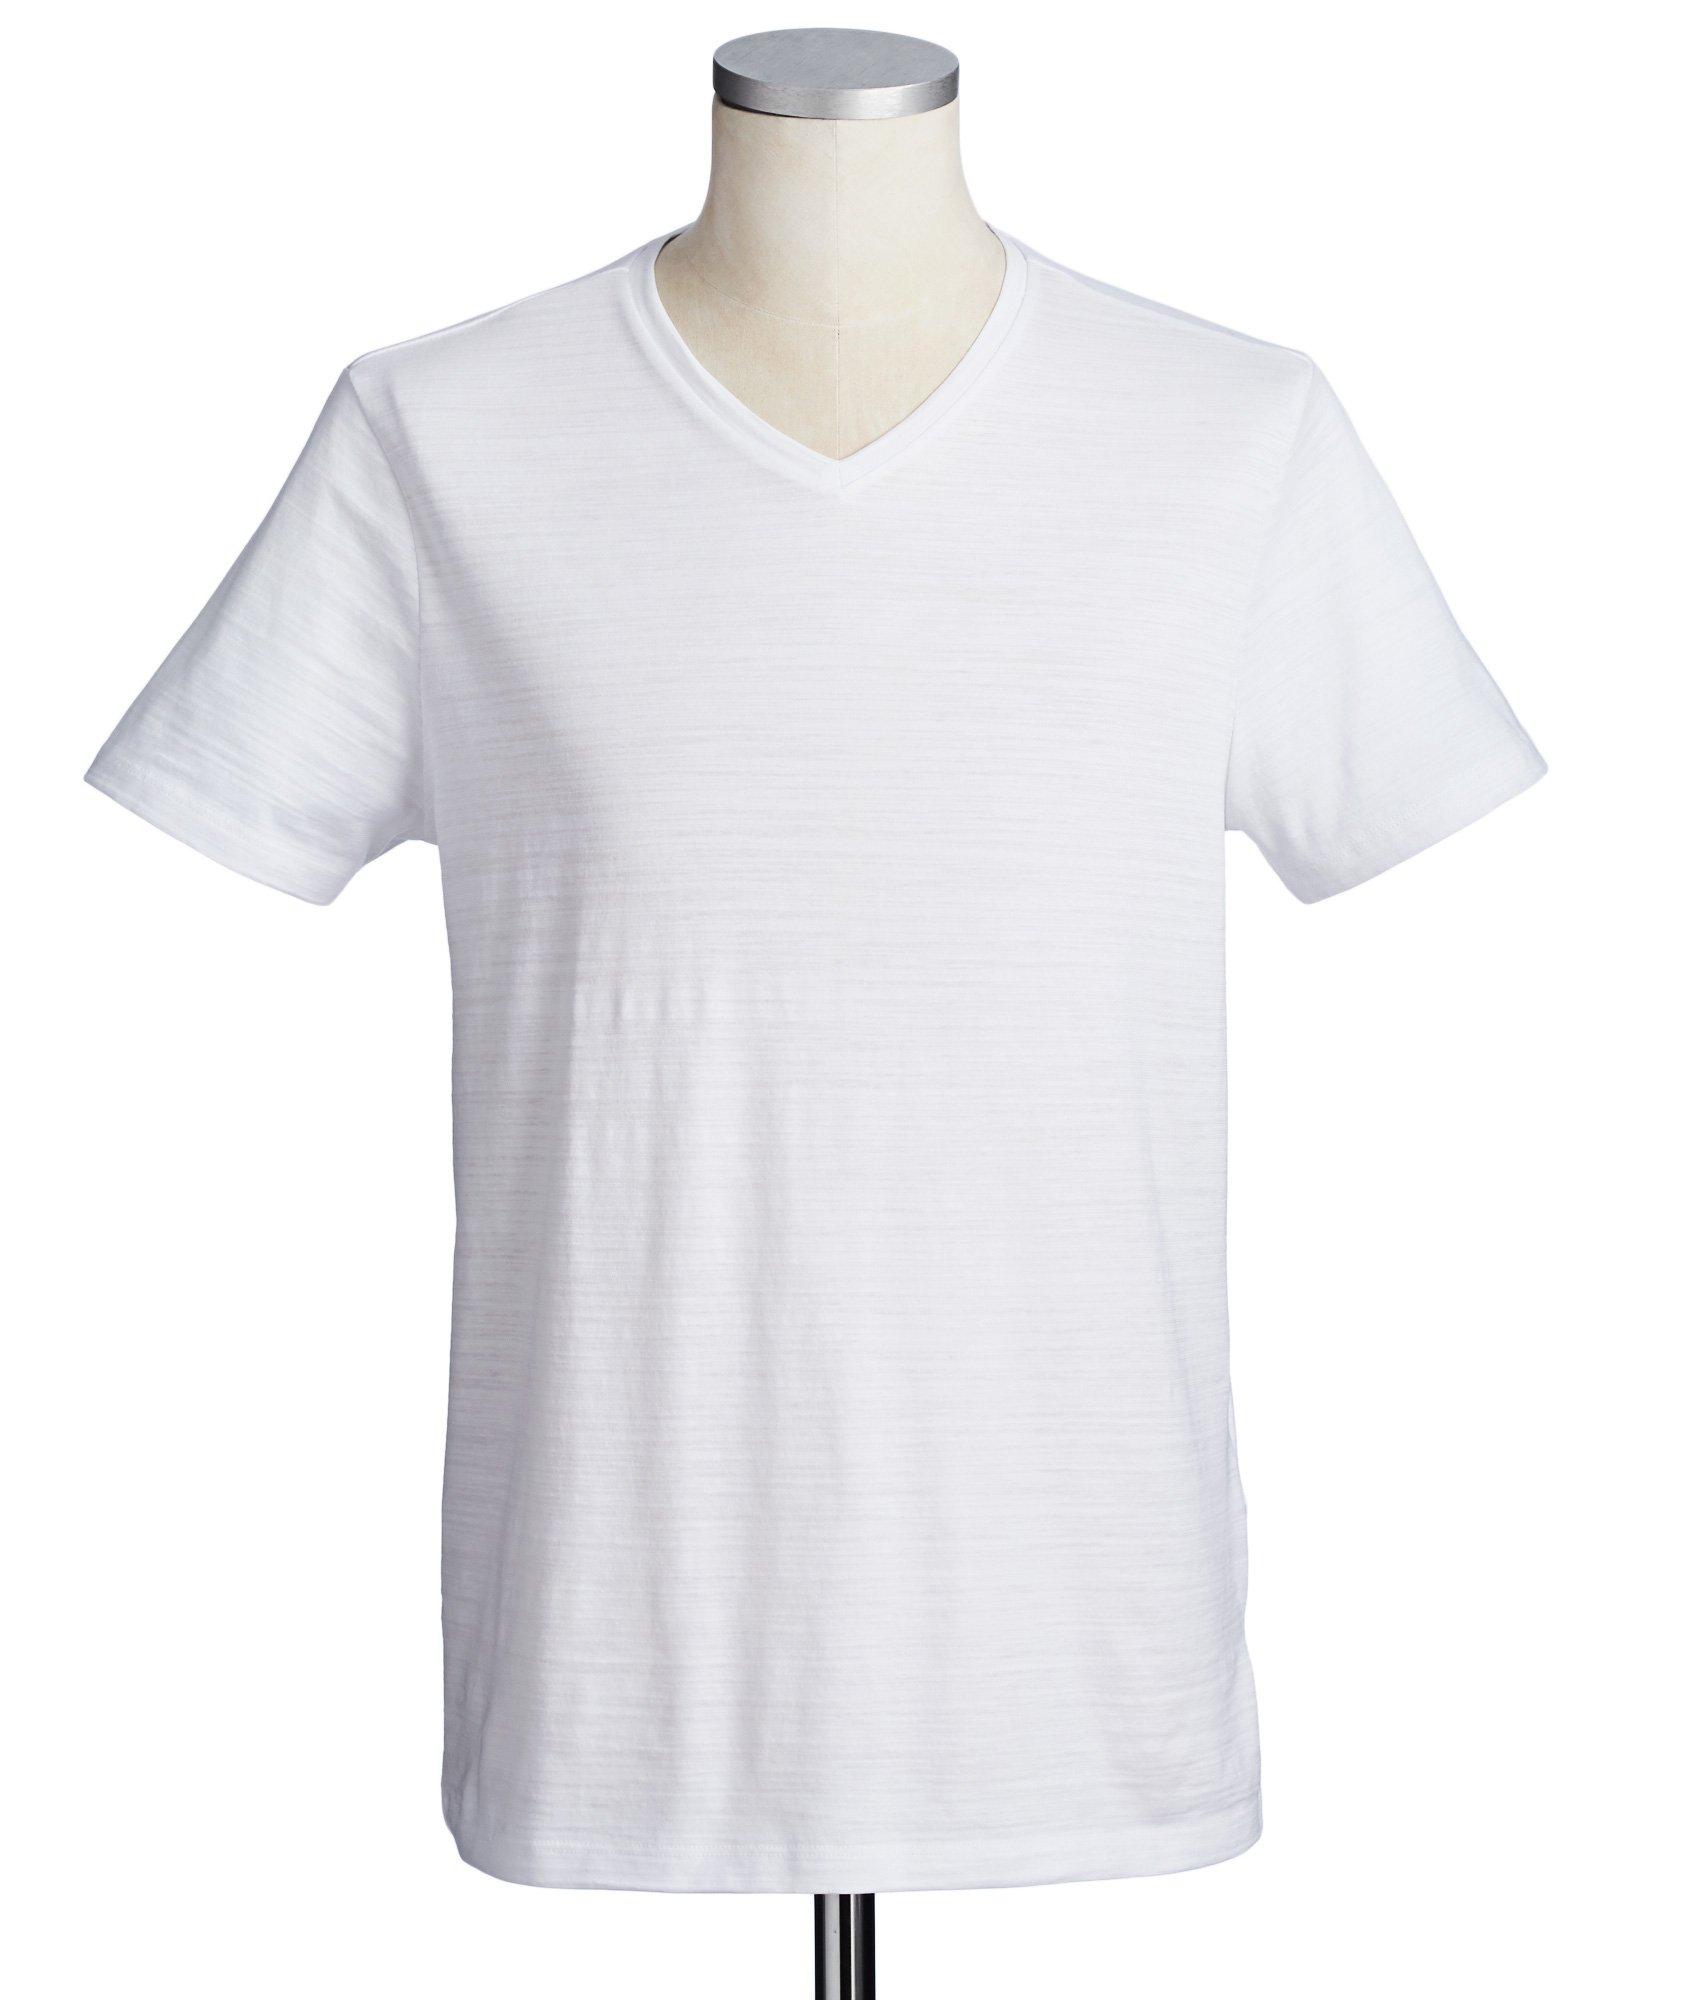 T-shirt en coton, modèle Tilson image 0